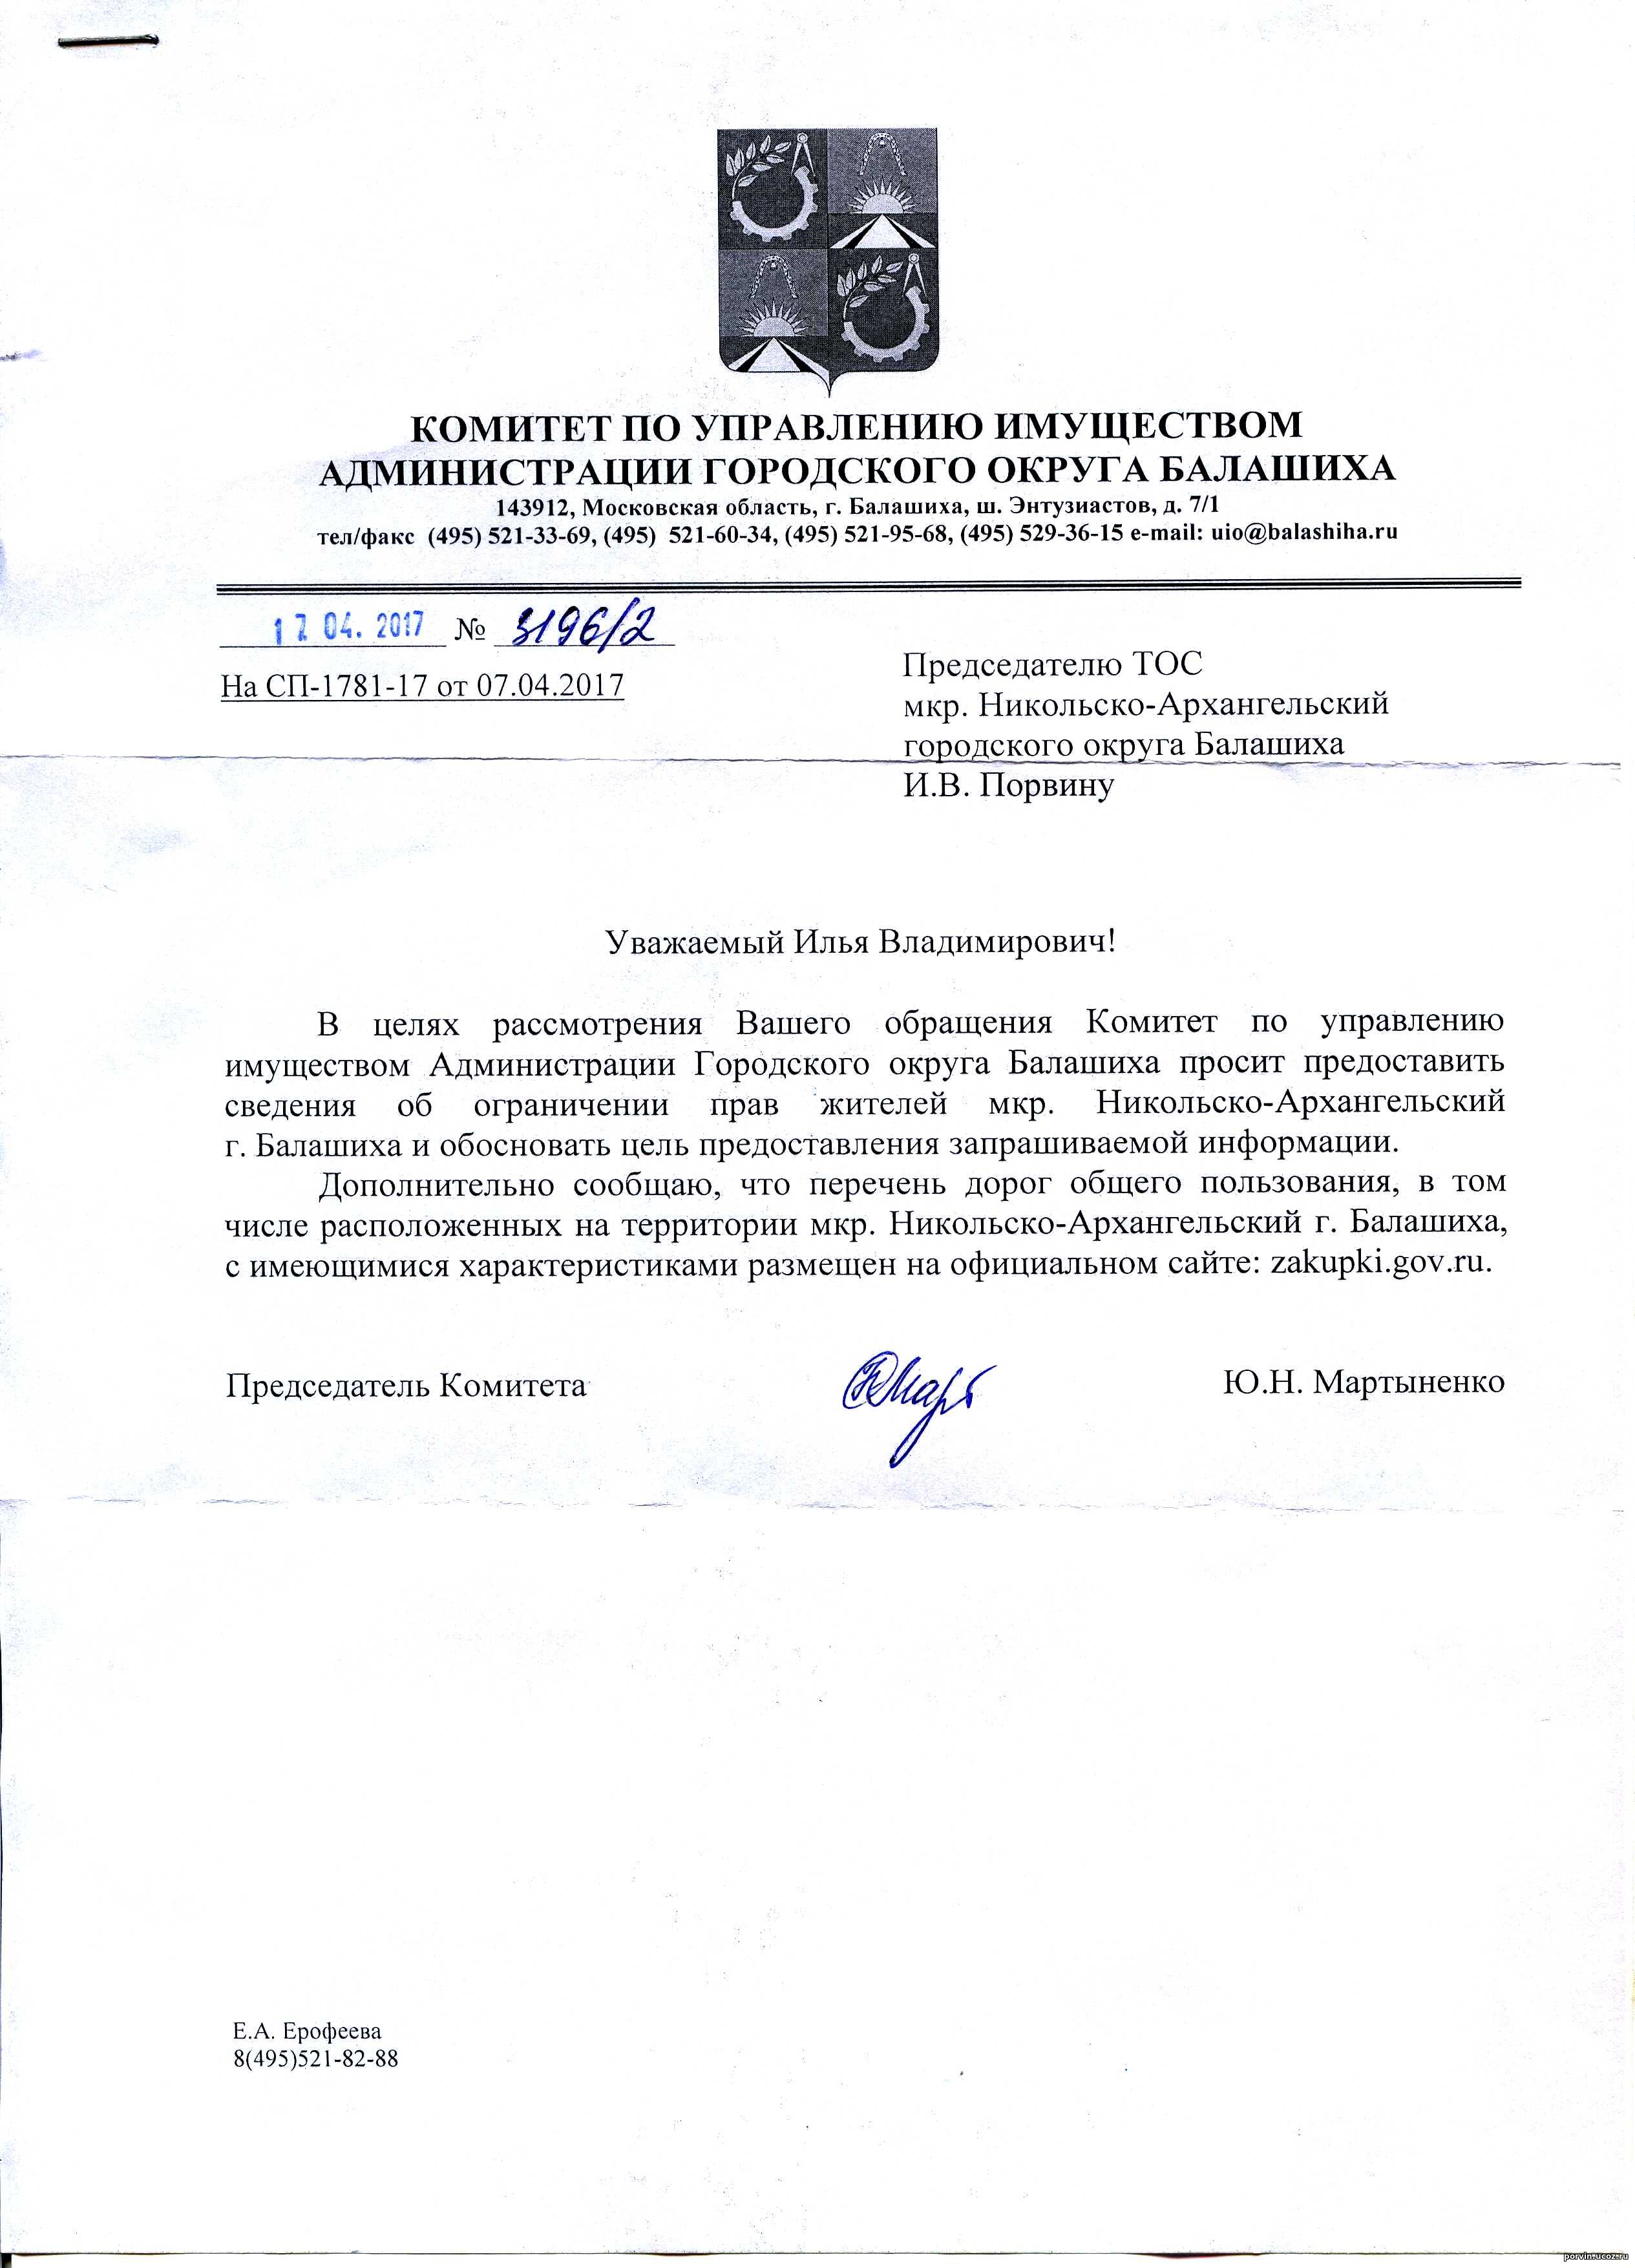 Комитет по управлению имуществом волгоградской области